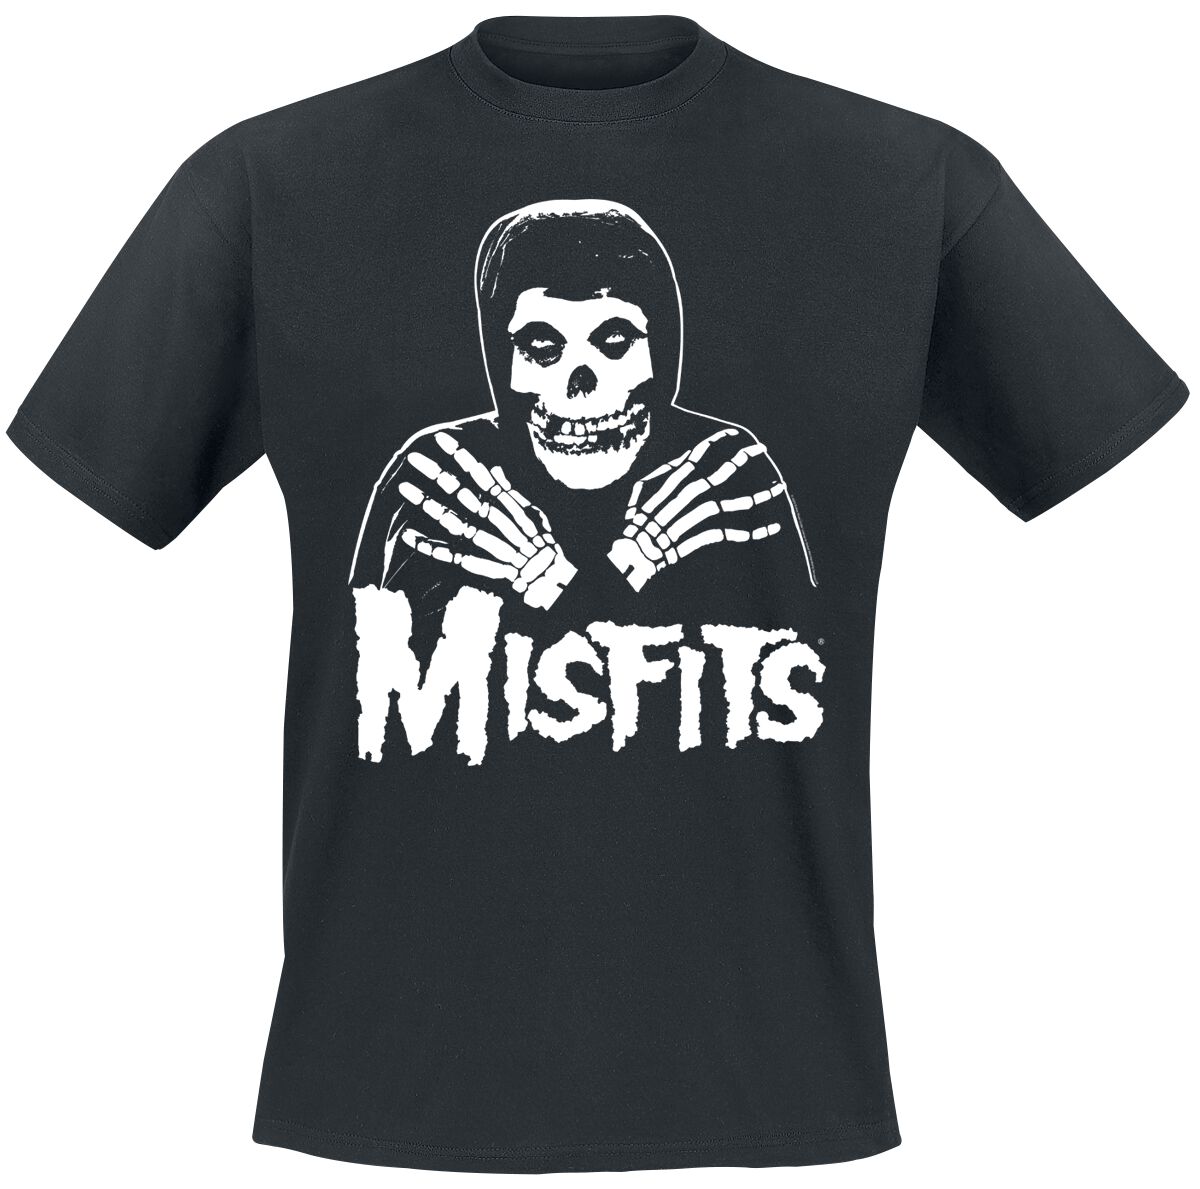 Misfits T-Shirt - Misfits Skull - L bis 4XL - für Männer - Größe 4XL - schwarz  - Lizenziertes Merchandise!